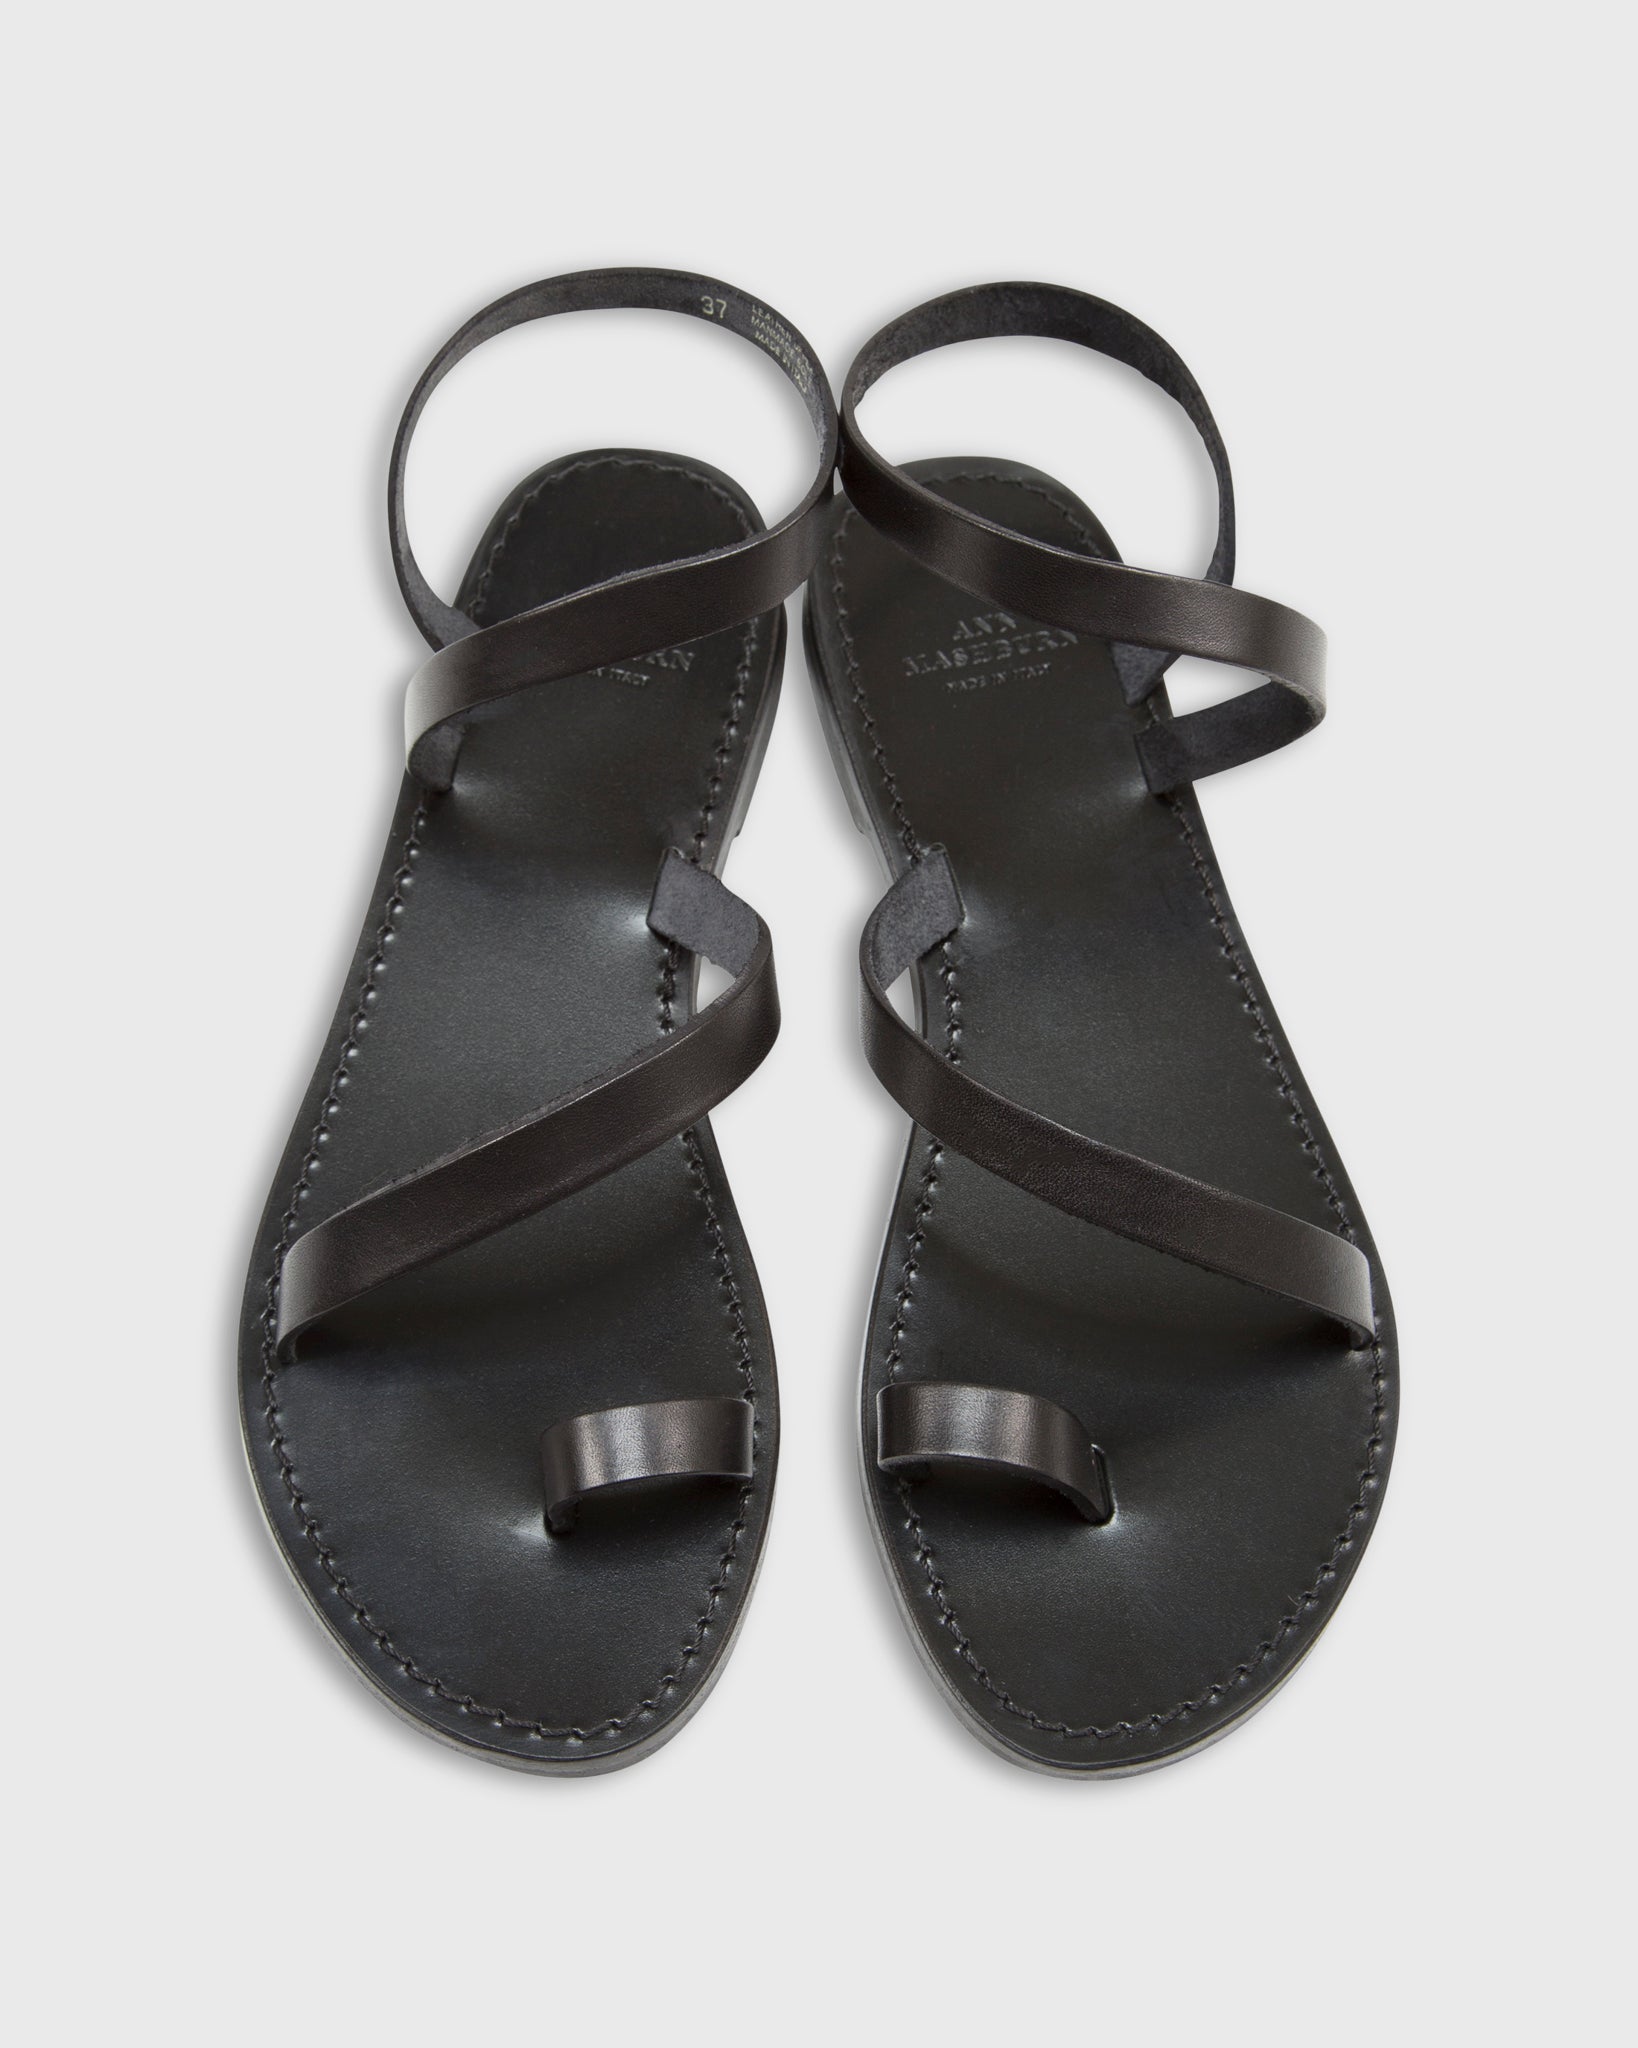 Diagonal Strap Sandal in Black Leather